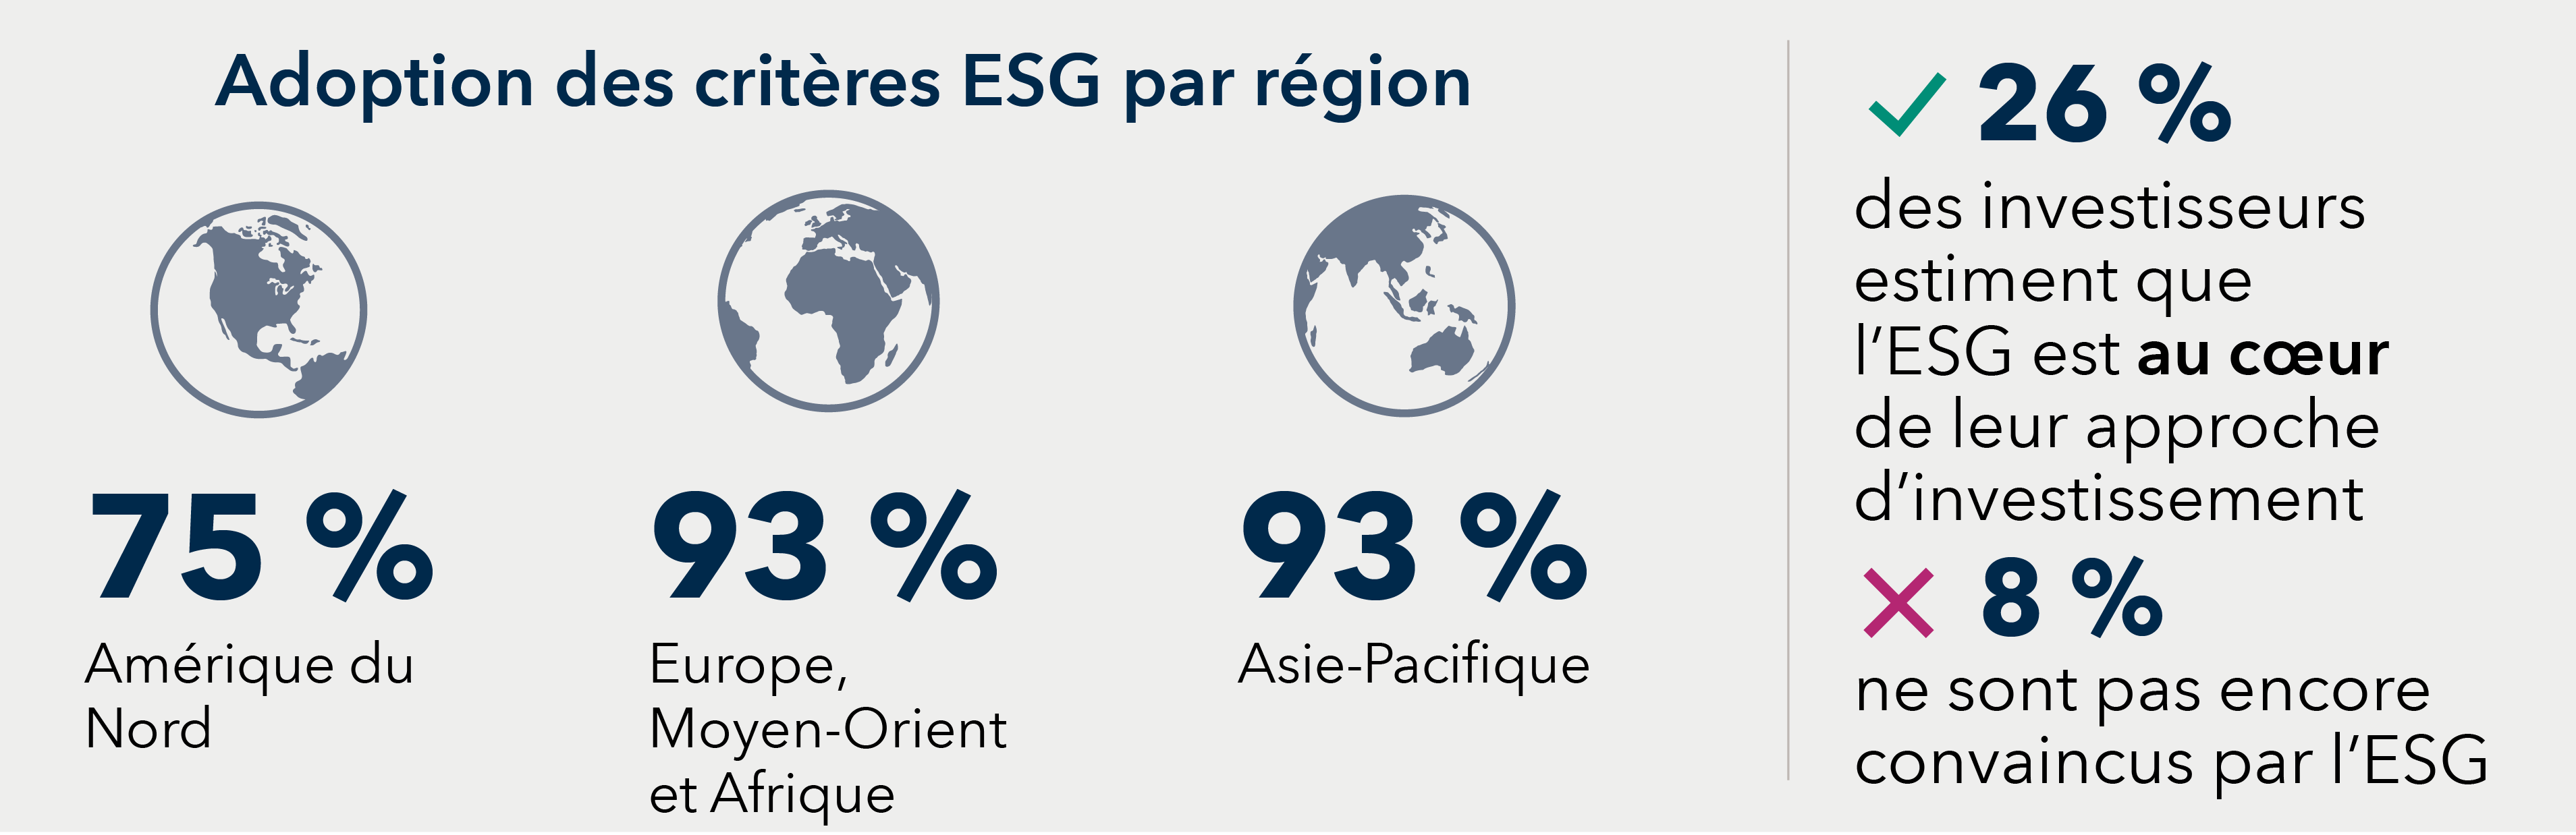 Adoption des critères ESG par région